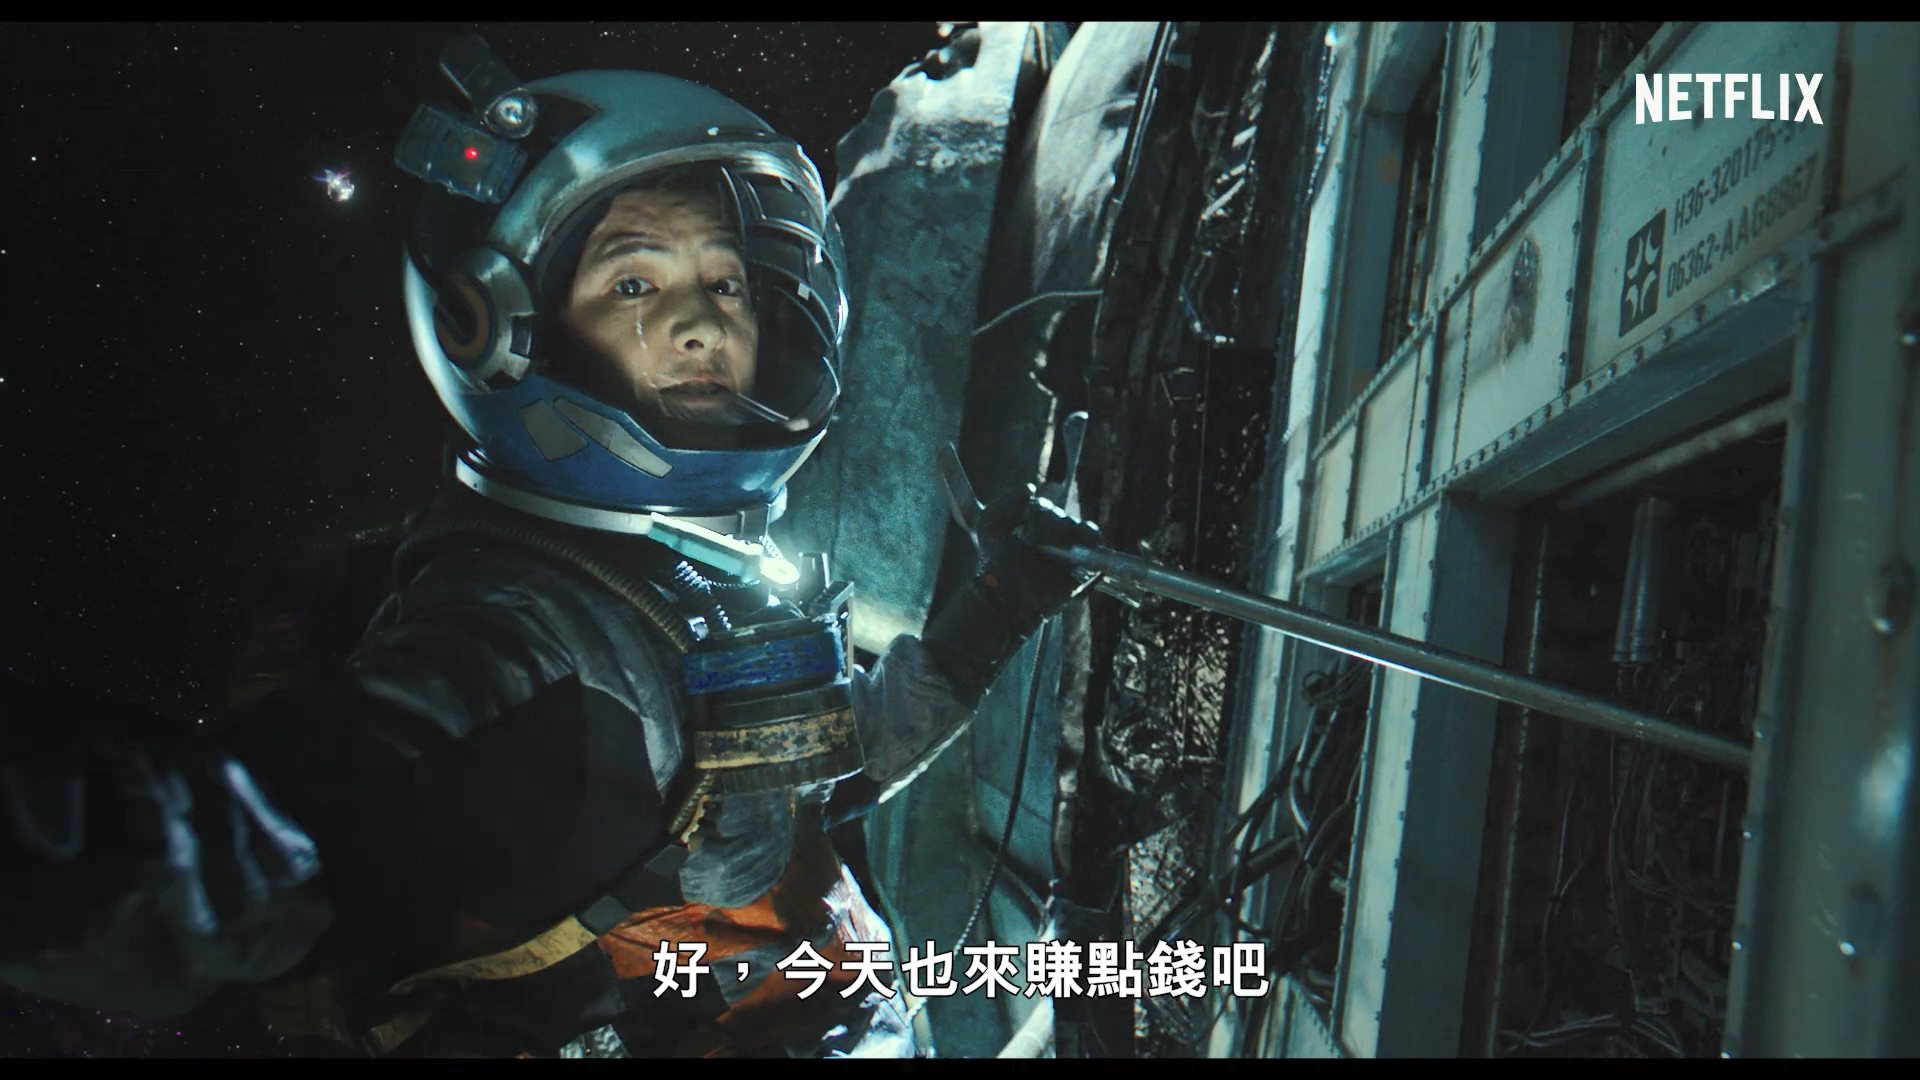 韩国首部太空科幻片《胜利号》前导预告 2月5日上线Netflix